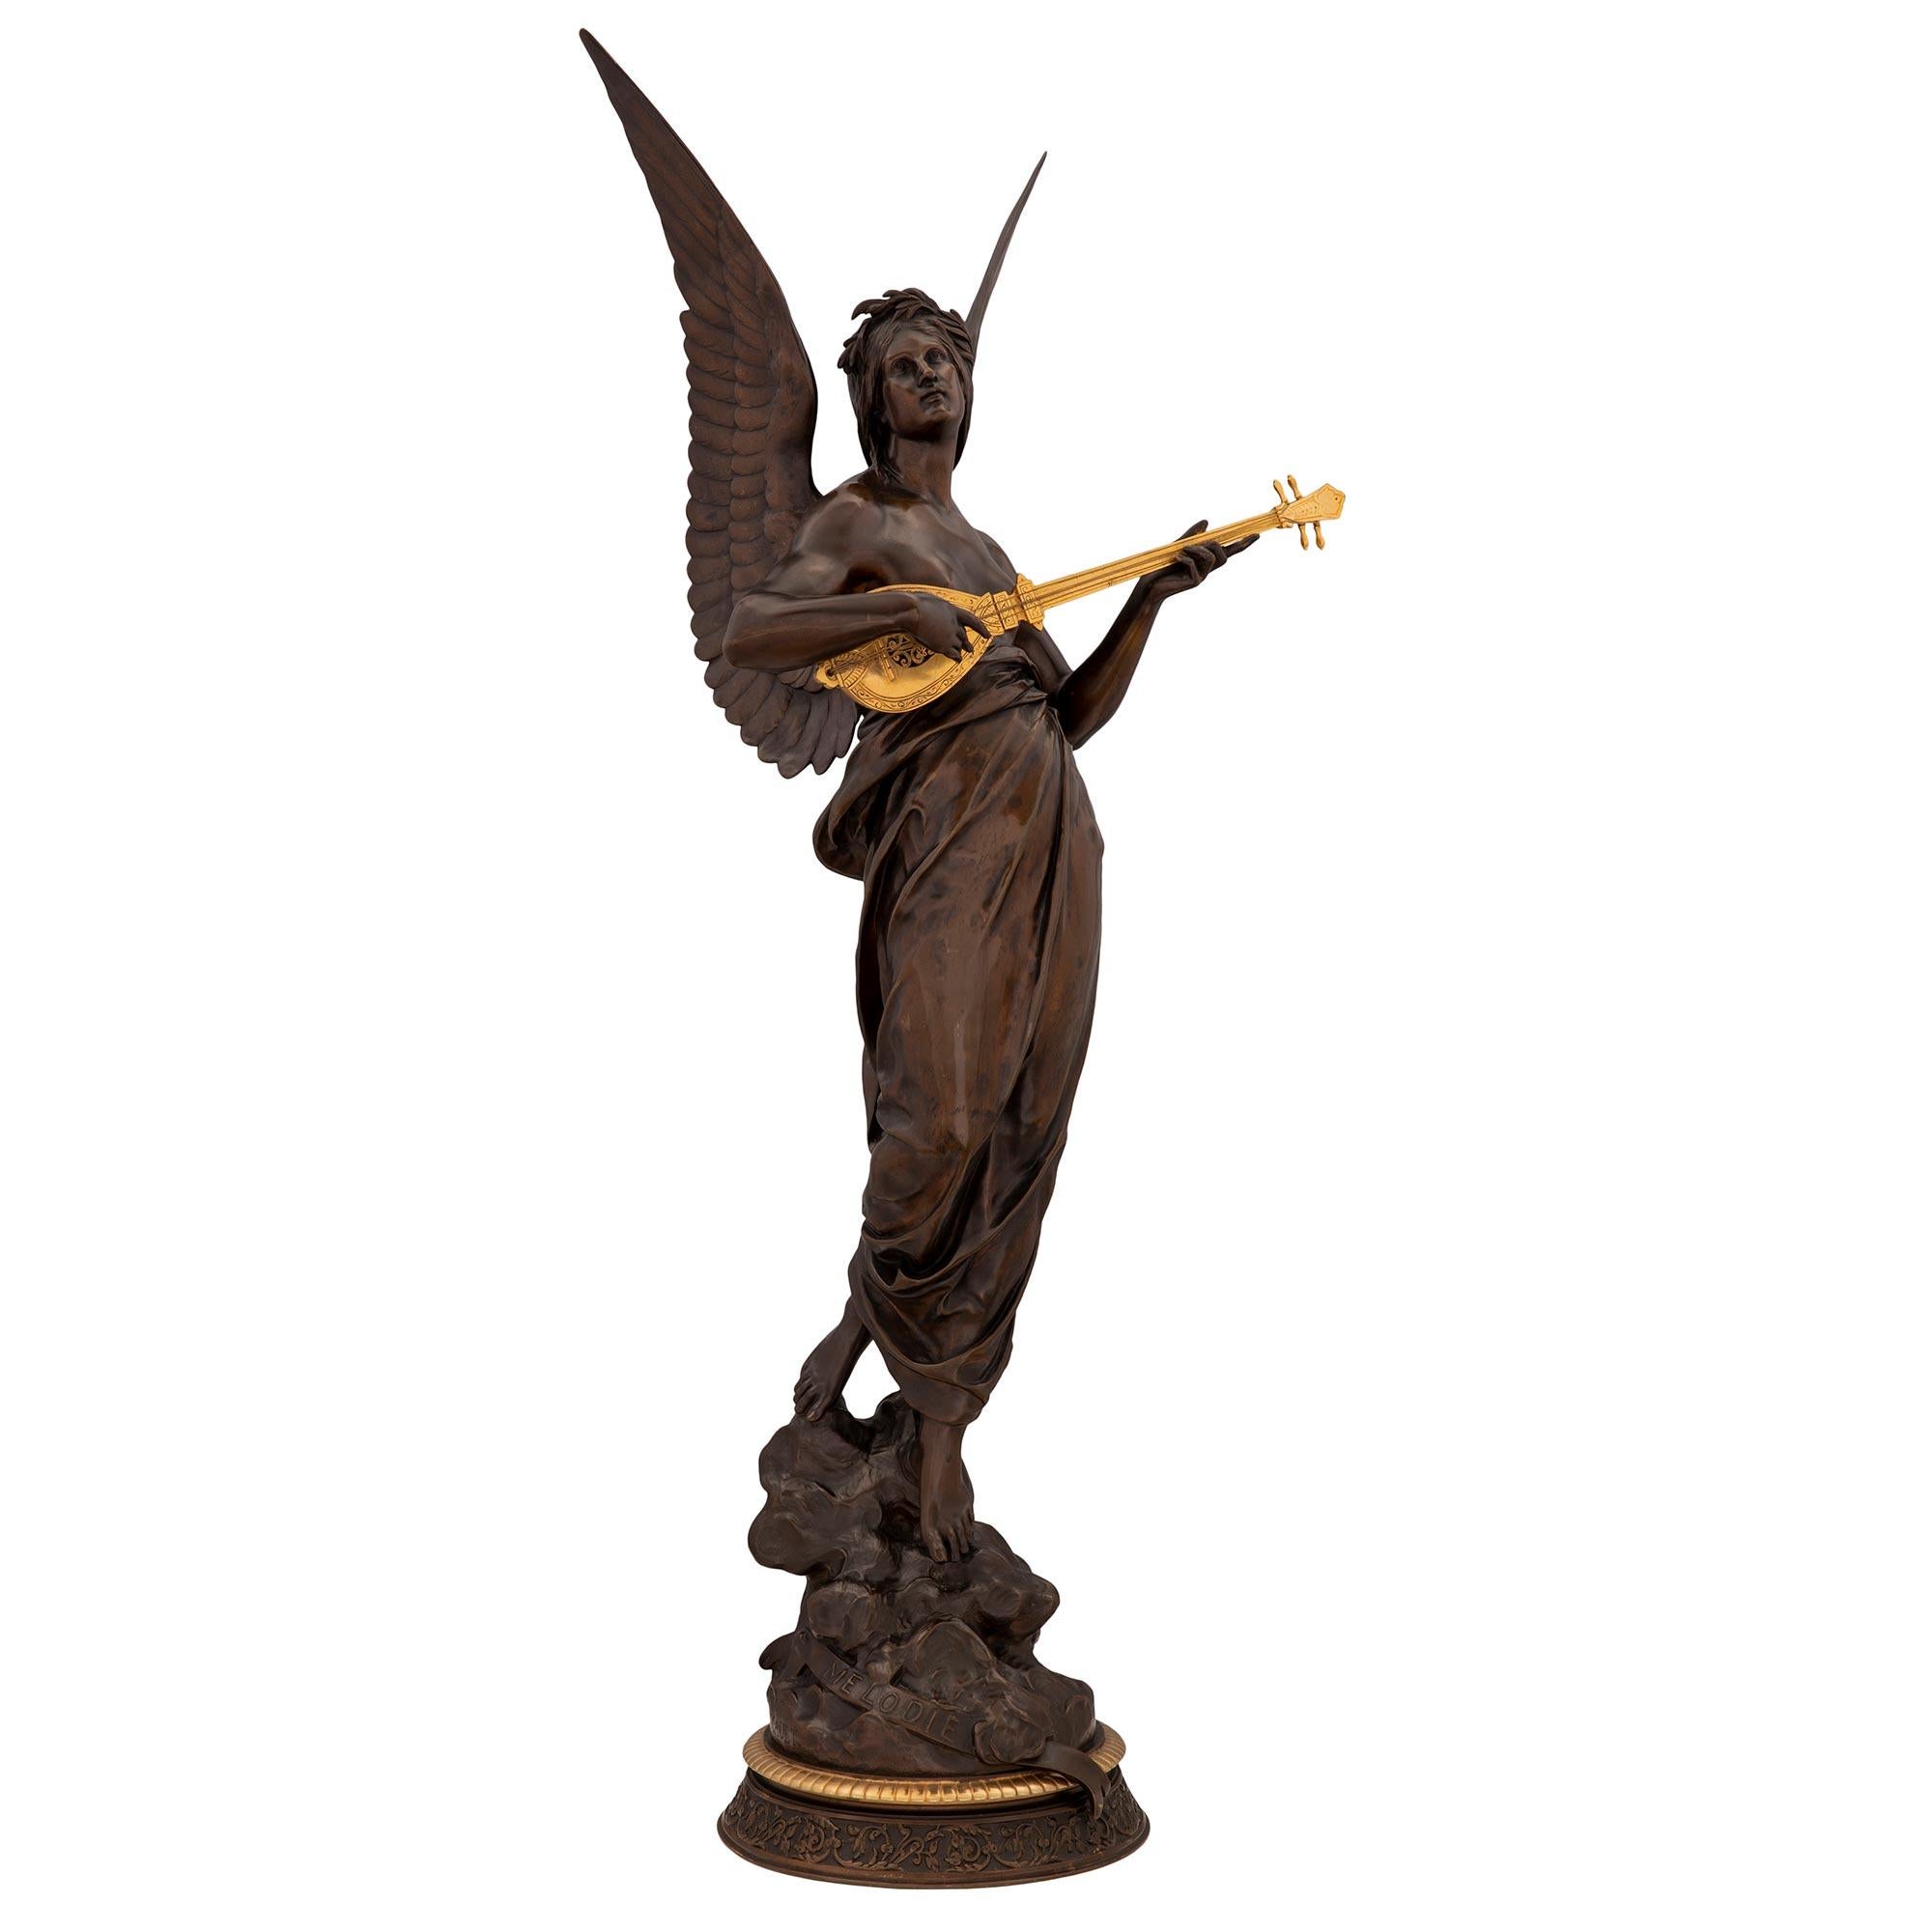 Statue de Mélodie en bronze patiné et bronze doré de très grande qualité, signée E. Picault, datant du XIXe siècle et de l'époque Louis XVI. La statue est surélevée par une base circulaire mouchetée des plus décoratives, dotée d'une exceptionnelle